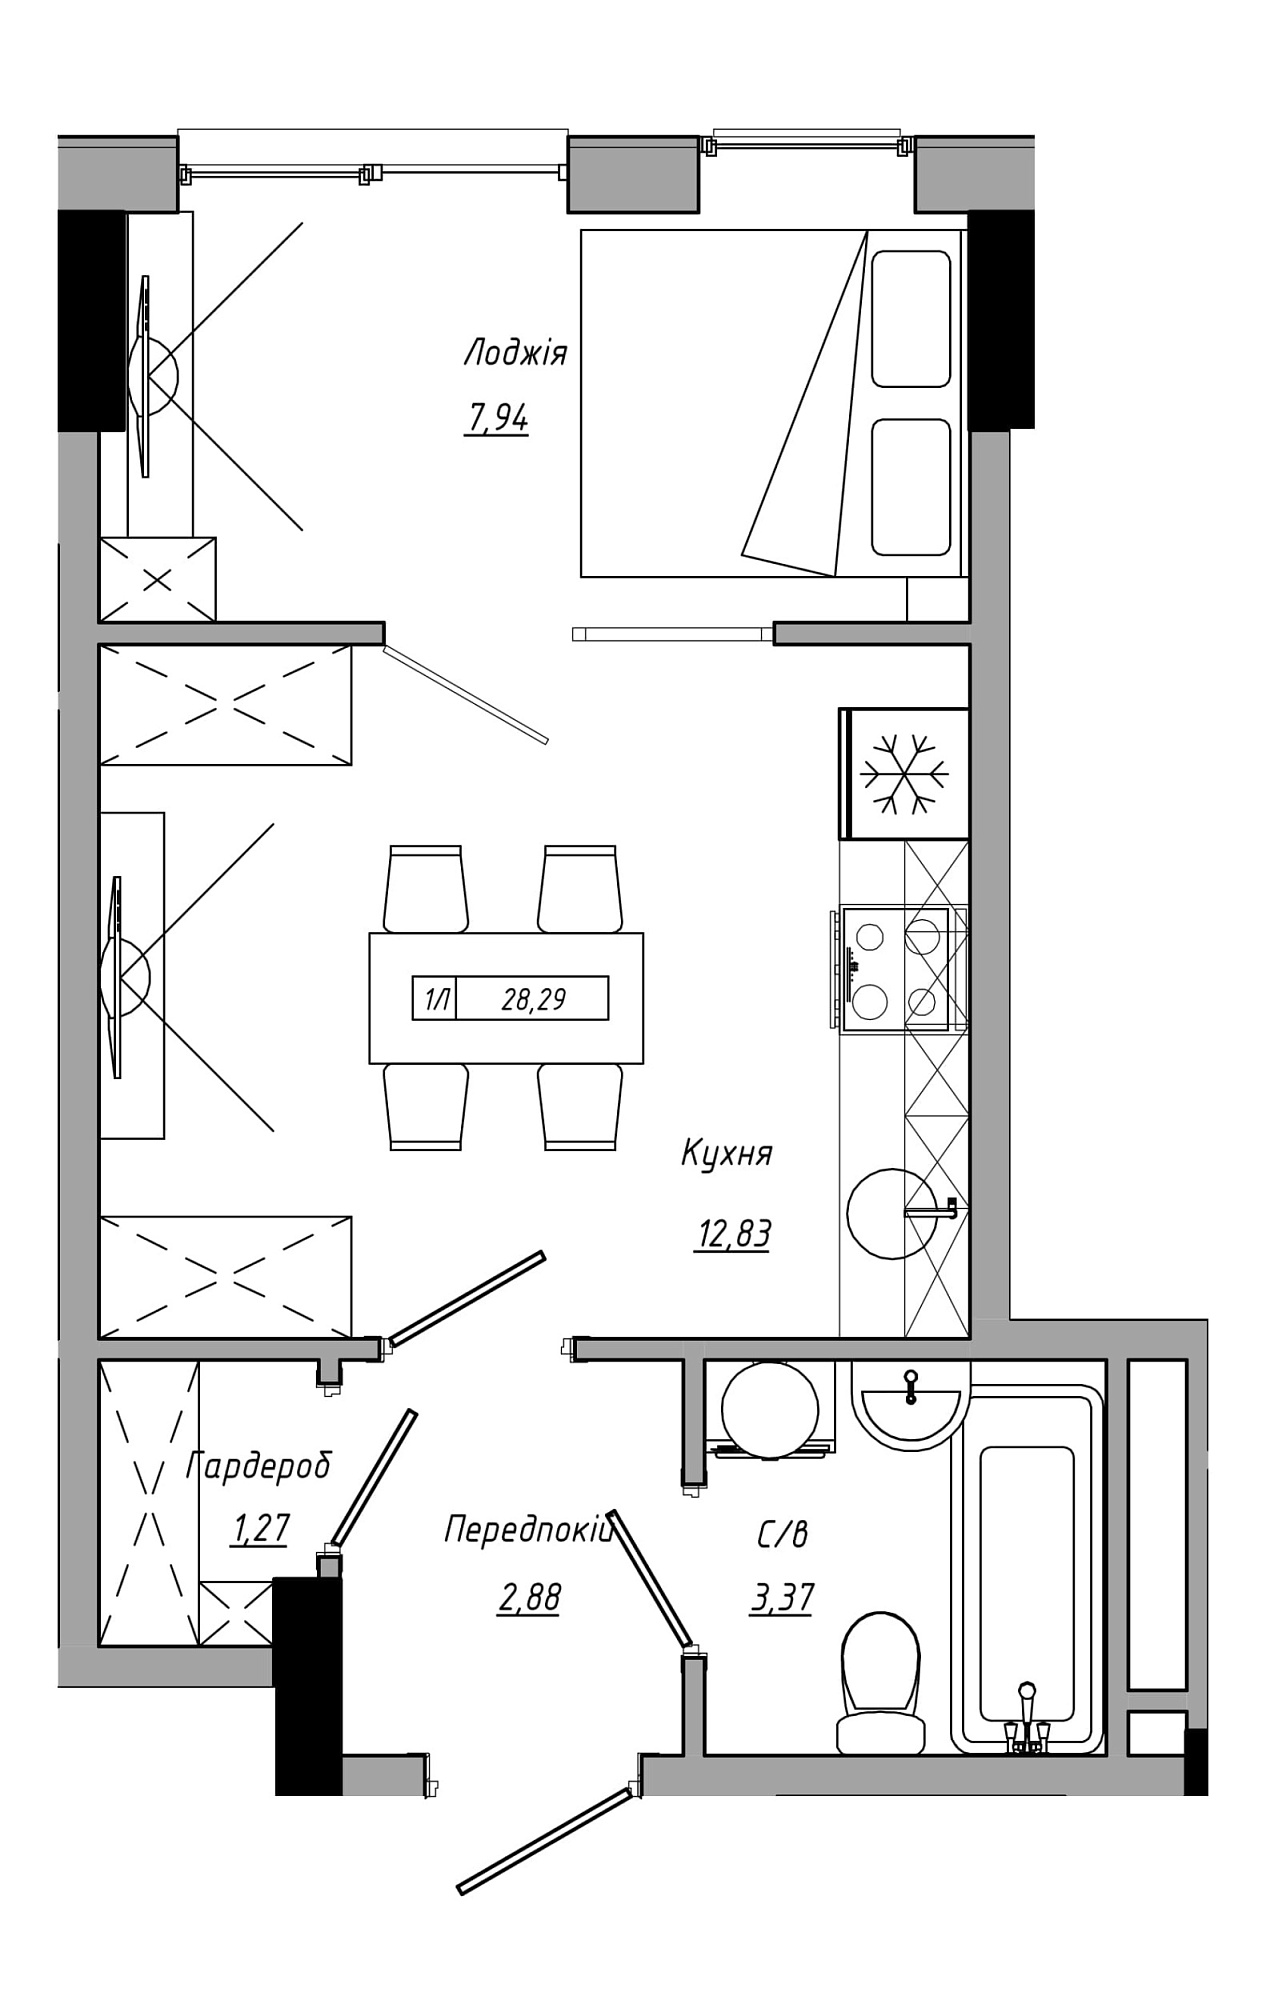 Планировка 1-к квартира площей 28.29м2, AB-21-09/00014.